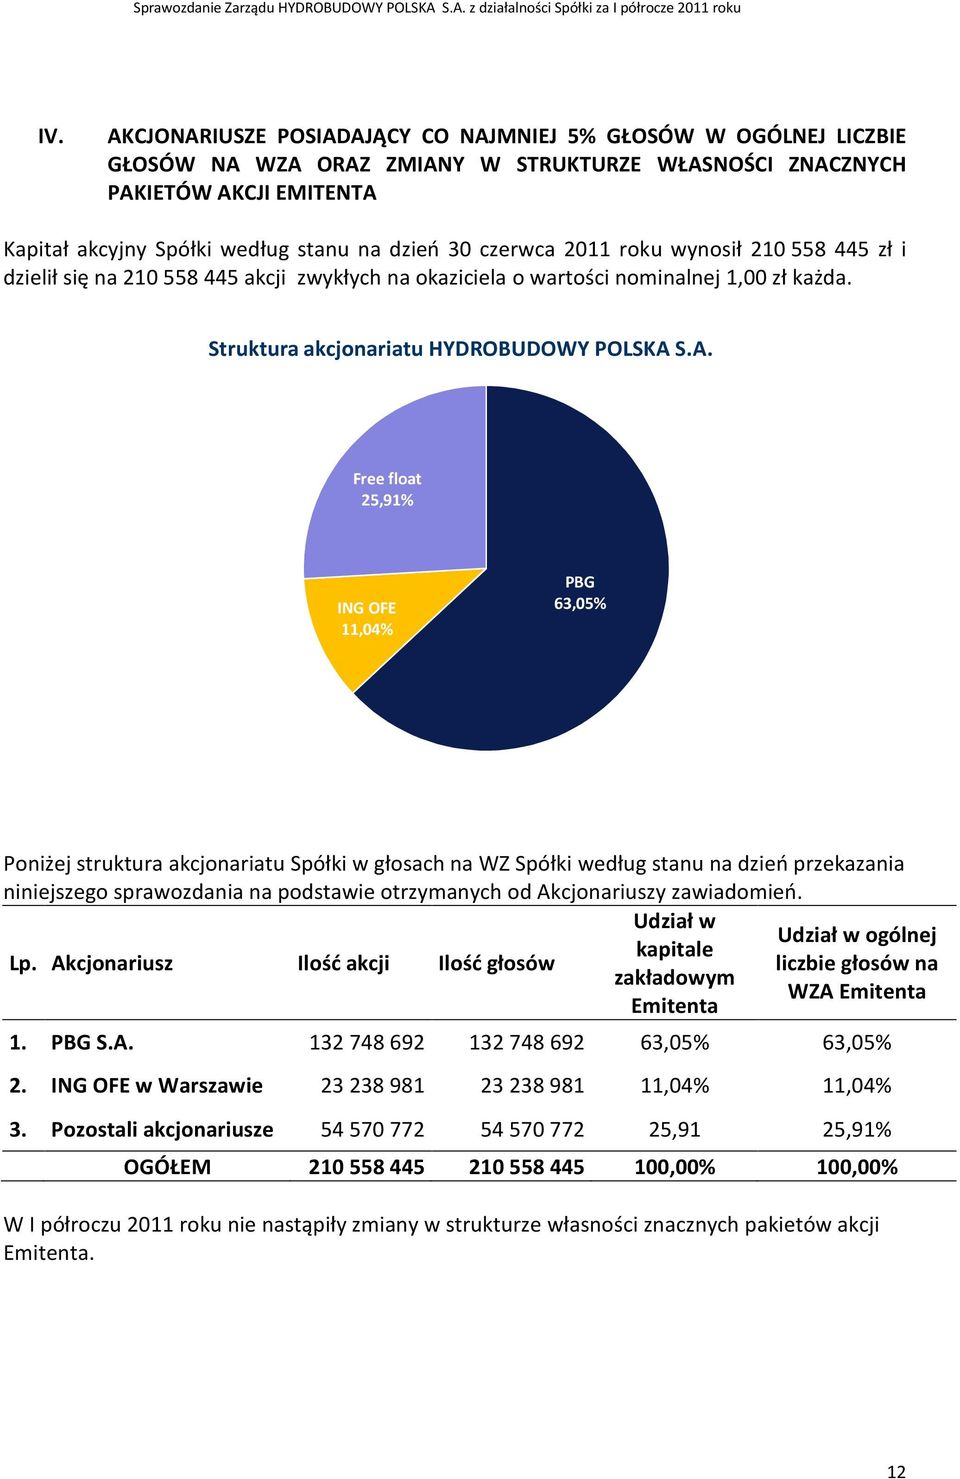 S.A. Free float 25,91% ING OFE 11,04% PBG 63,05% Poniżej struktura akcjonariatu Spółki w głosach na WZ Spółki według stanu na dzień przekazania niniejszego sprawozdania na podstawie otrzymanych od